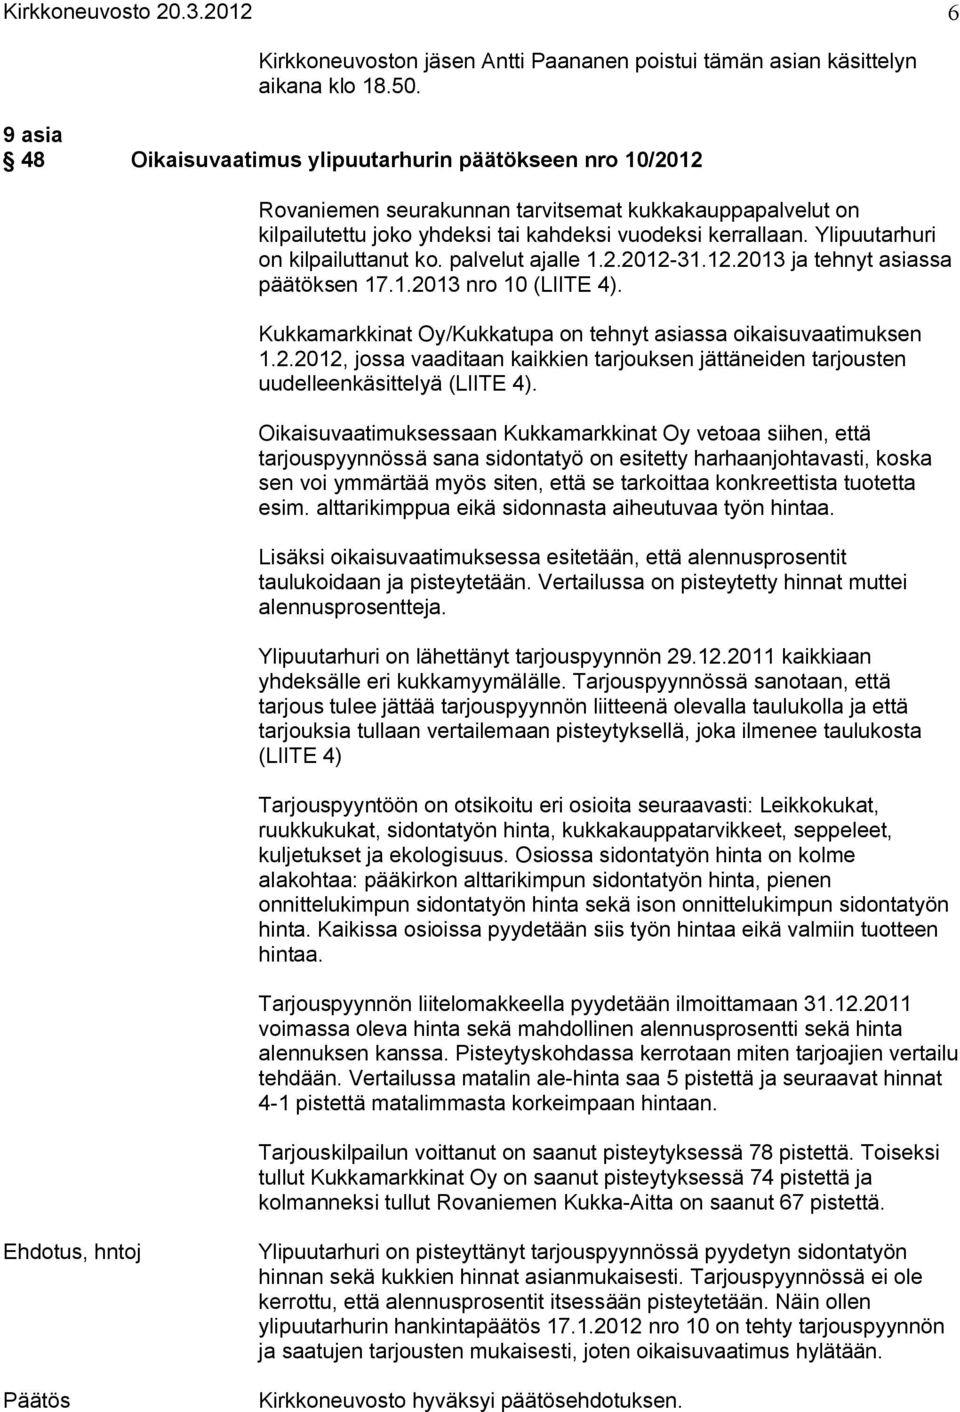 Ylipuutarhuri on kilpailuttanut ko. palvelut ajalle 1.2.2012 31.12.2013 ja tehnyt asiassa päätöksen 17.1.2013 nro 10 (LIITE 4). Kukkamarkkinat Oy/Kukkatupa on tehnyt asiassa oikaisuvaatimuksen 1.2.2012, jossa vaaditaan kaikkien tarjouksen jättäneiden tarjousten uudelleenkäsittelyä (LIITE 4).